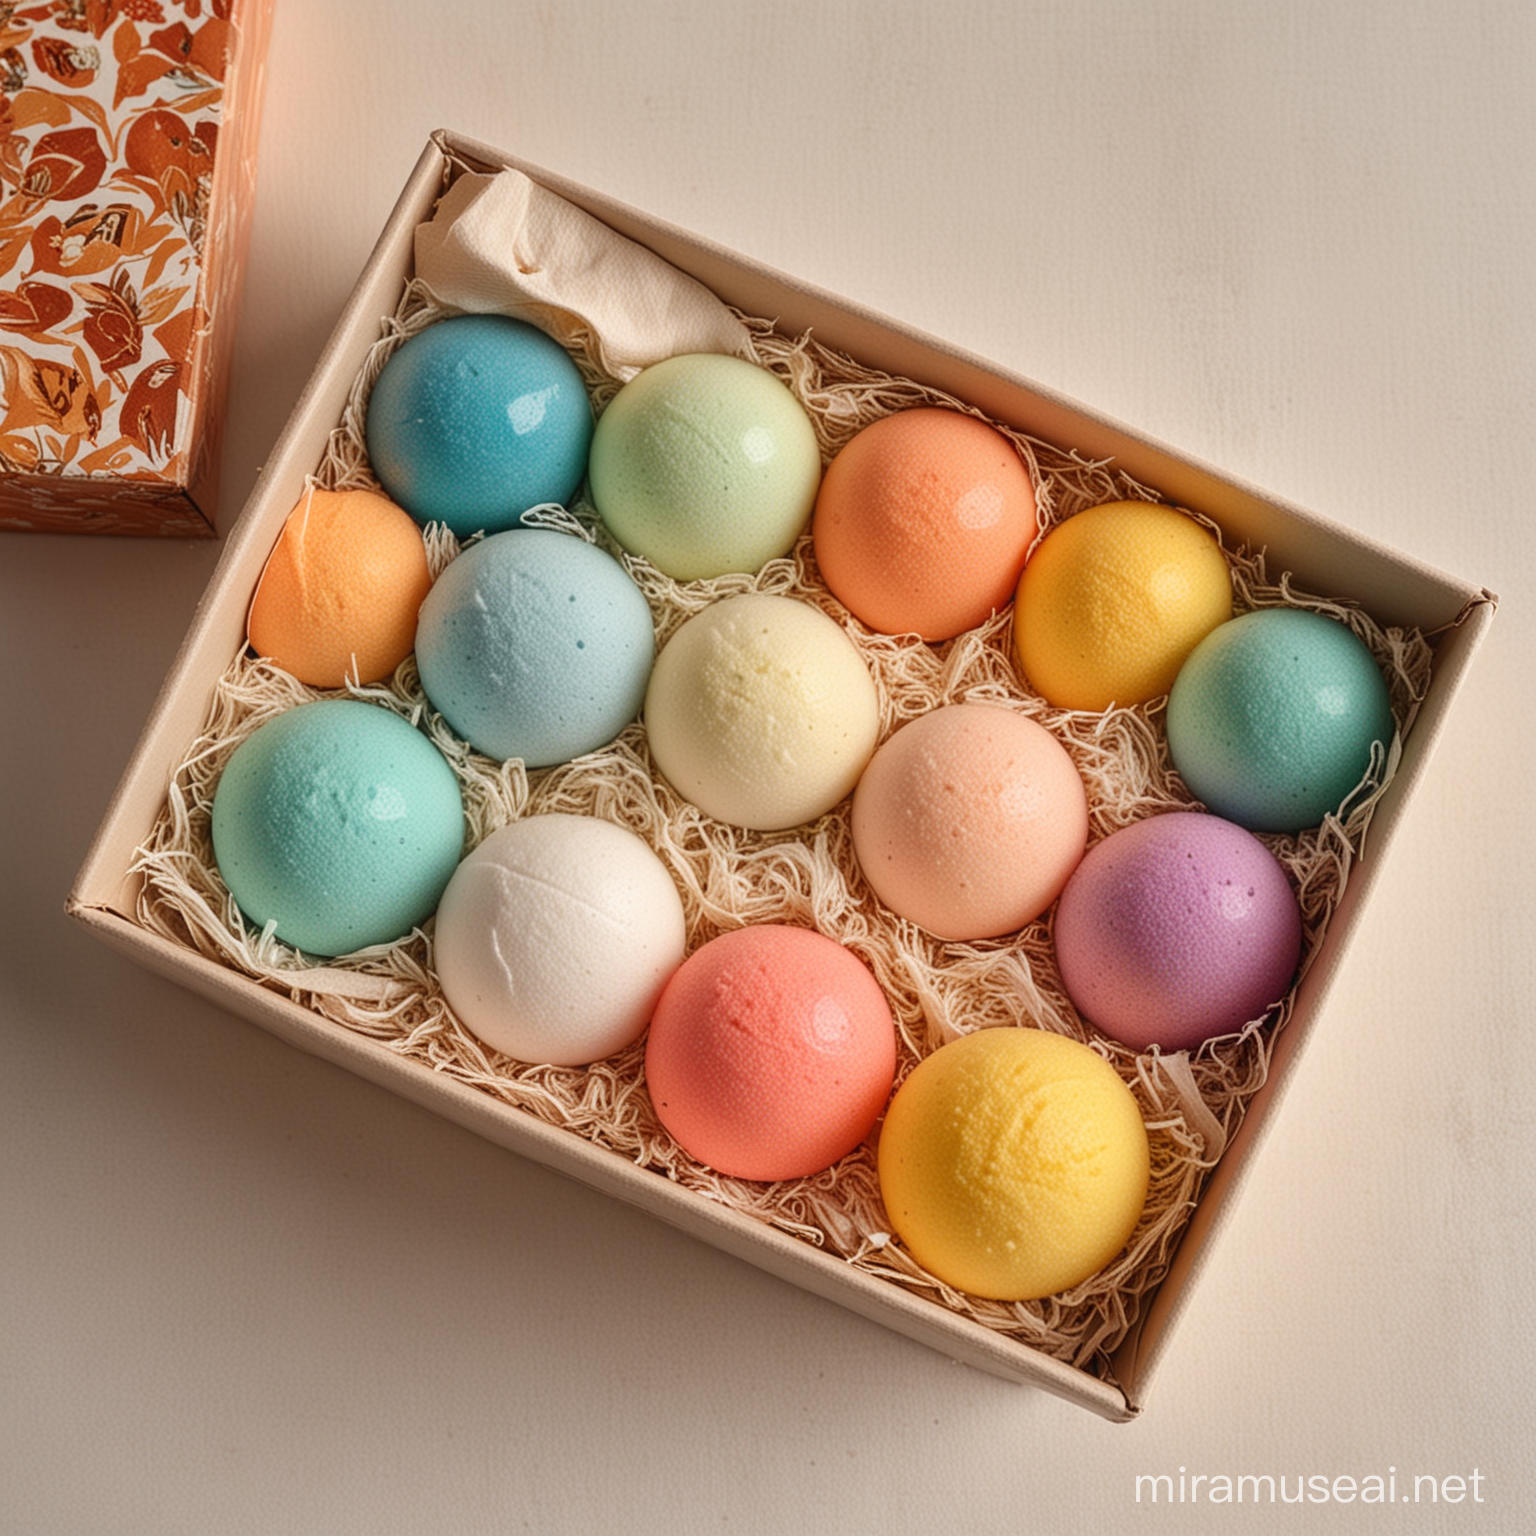 彩色的洗浴球放在漂亮的盒子里